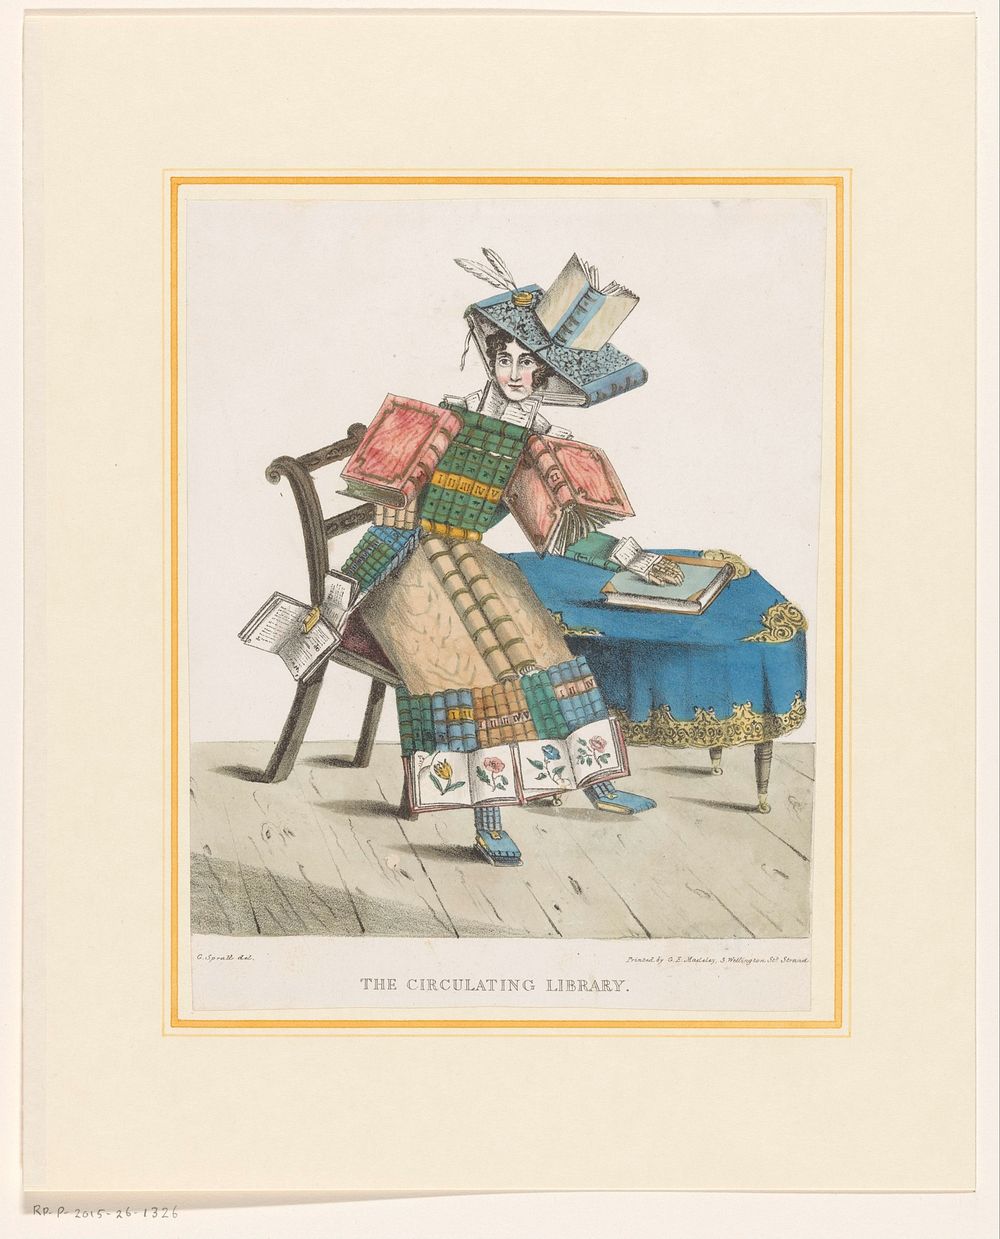 Vrouw met een lichaam opgebouwd uit boeken (c. 1830) by G Spratt, George Edward Madeley and Charles Tilt